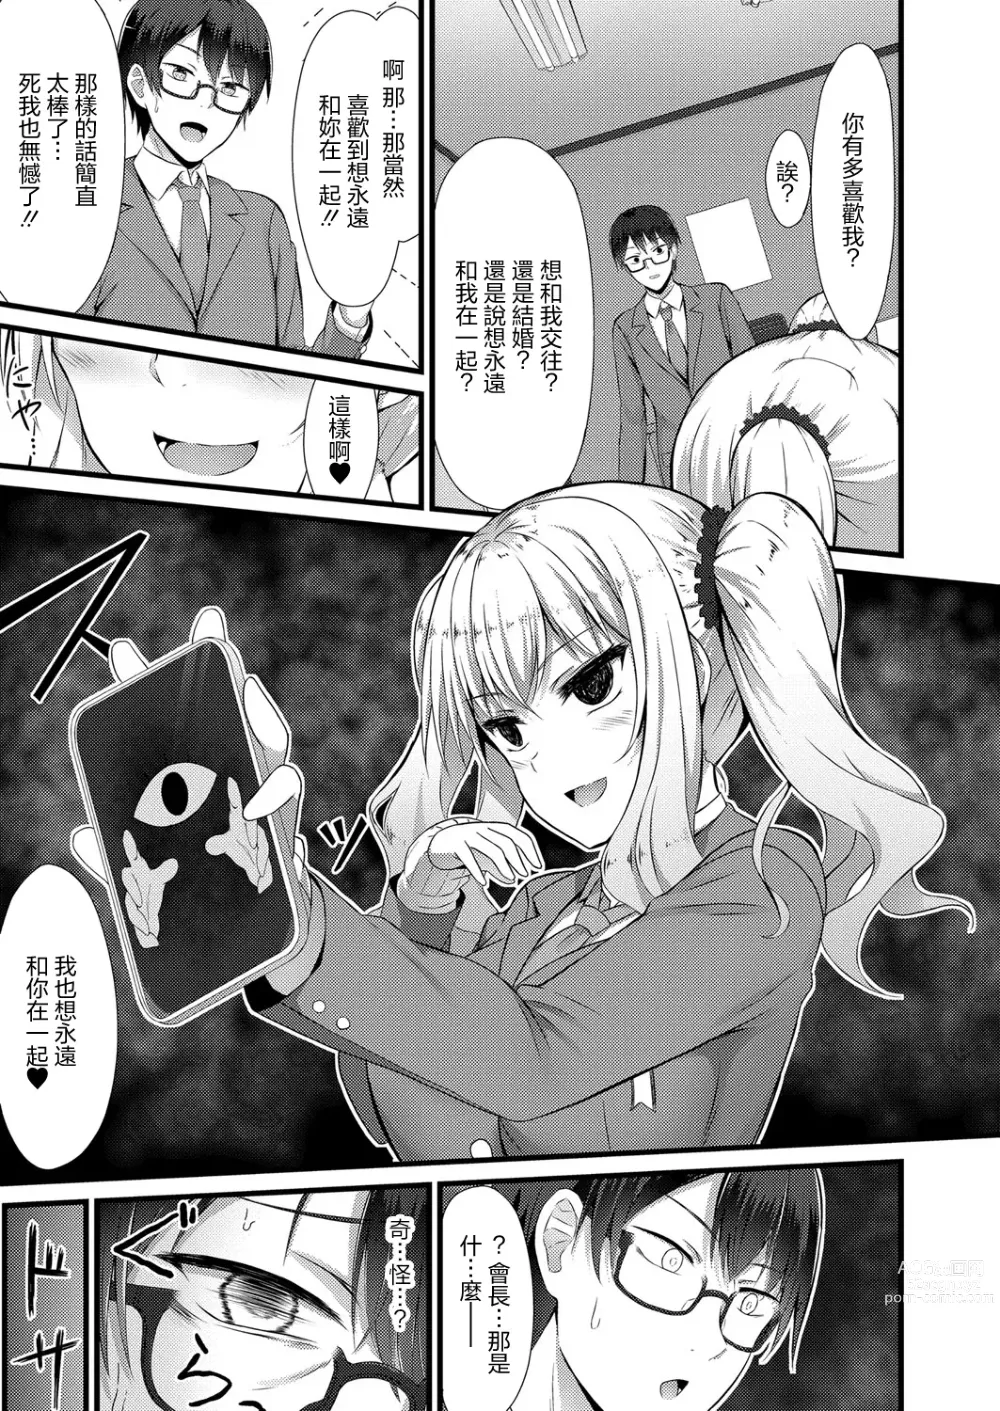 Page 3 of manga Zutto Mae kara Suki deshita